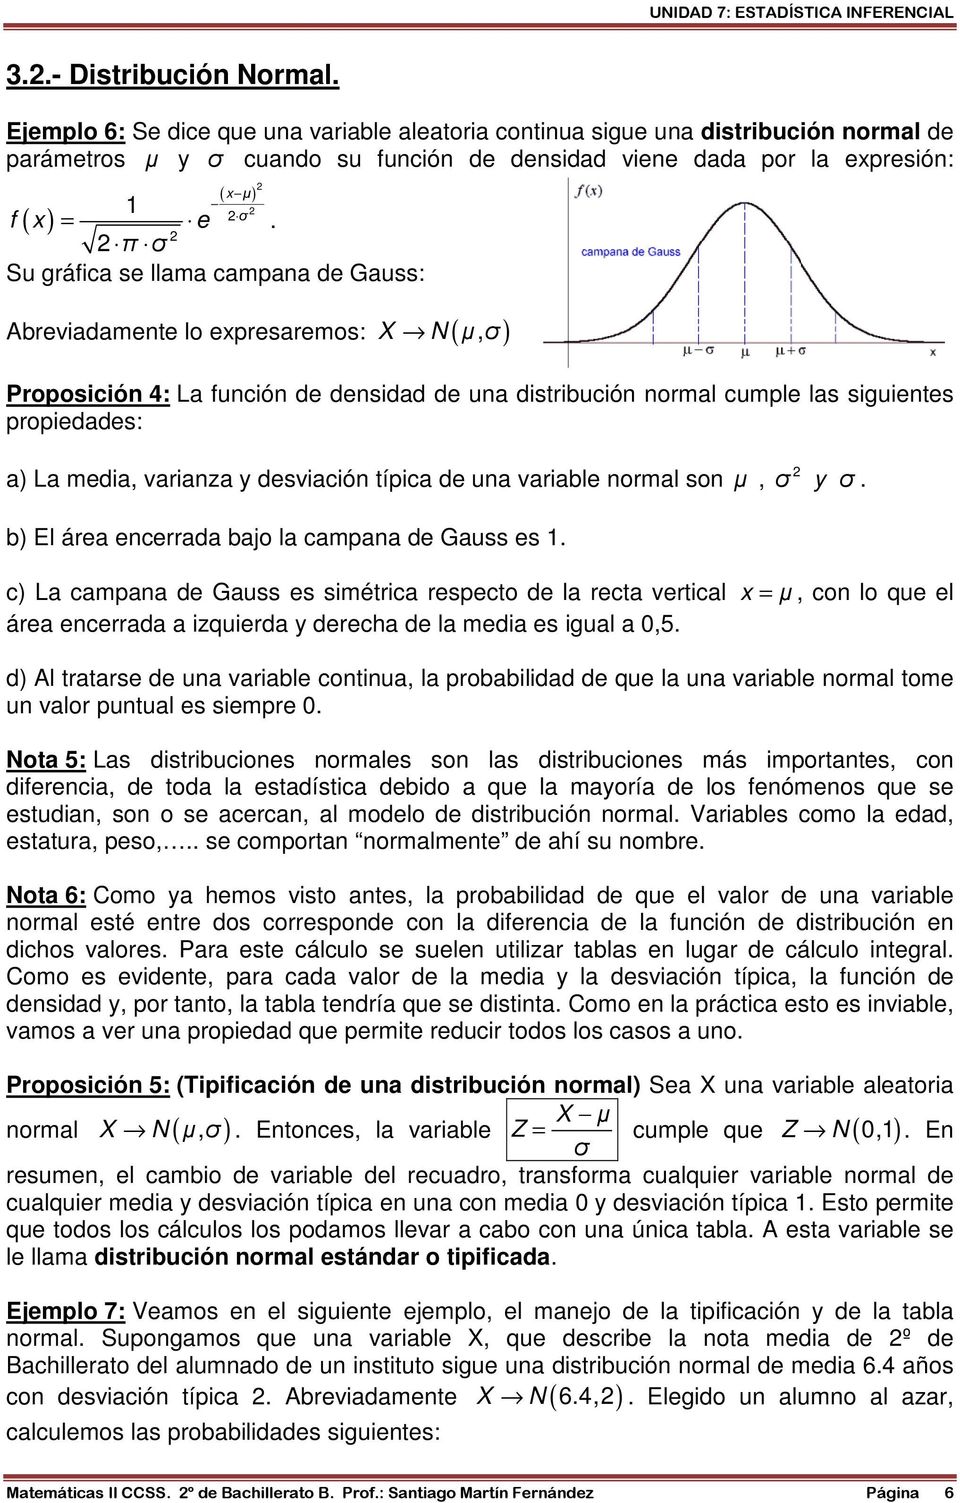 desviació típica de ua variable ormal so µ, σ y σ. b) El área ecerrada bajo la campaa de Gauss es 1.